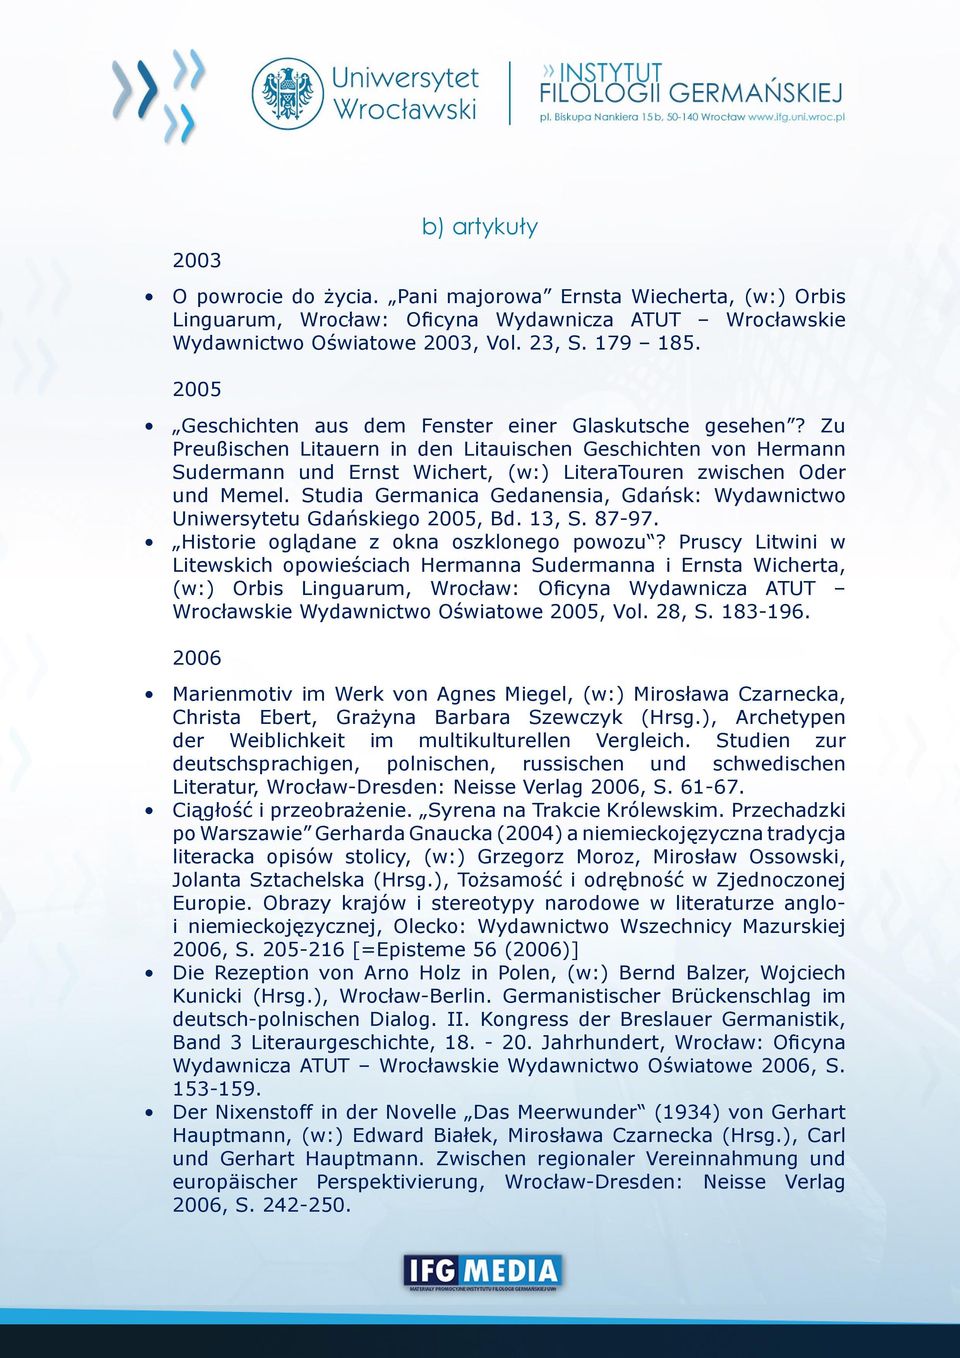 Studia Germanica Gedanensia, Gdańsk: Wydawnictwo Uniwersytetu Gdańskiego 2005, Bd. 13, S. 87-97. Historie oglądane z okna oszklonego powozu?